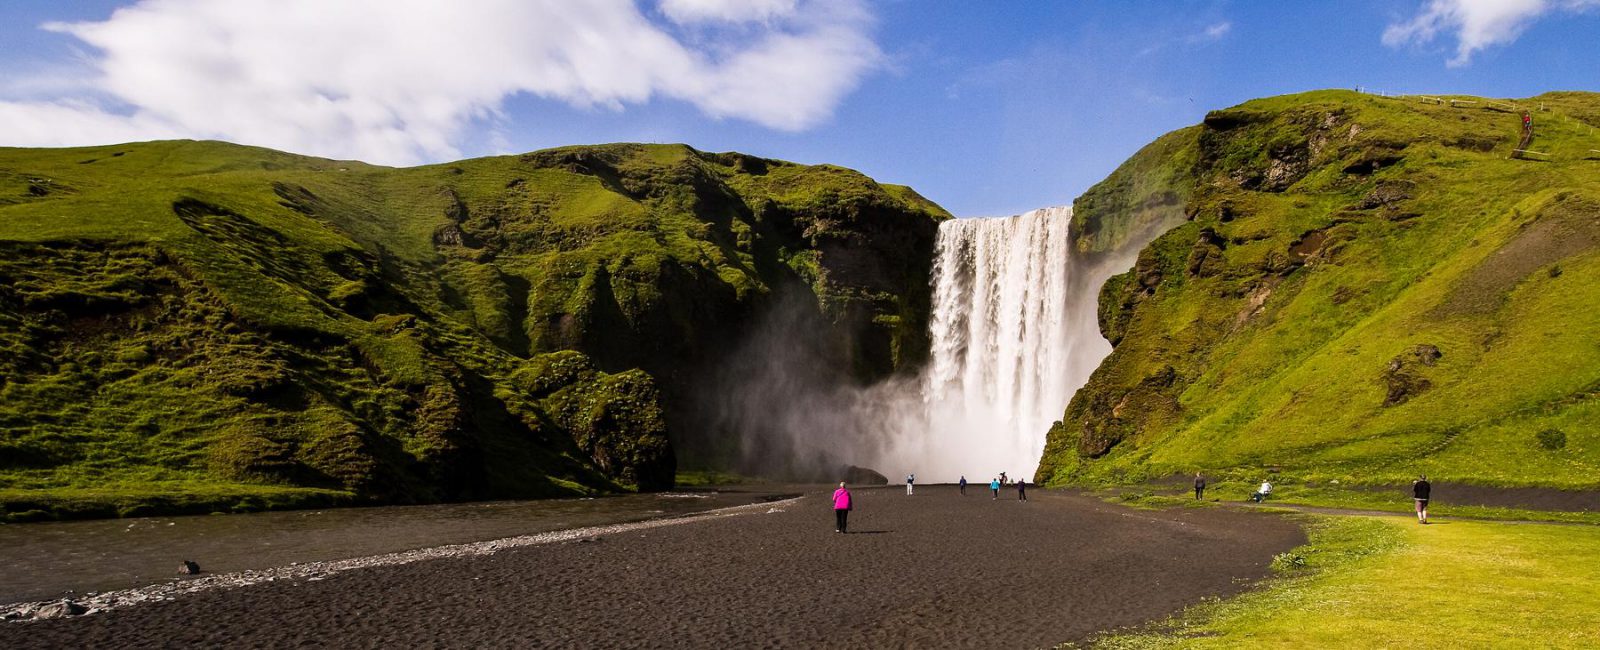 Islands schönste Wasserfälle - Skogafoss